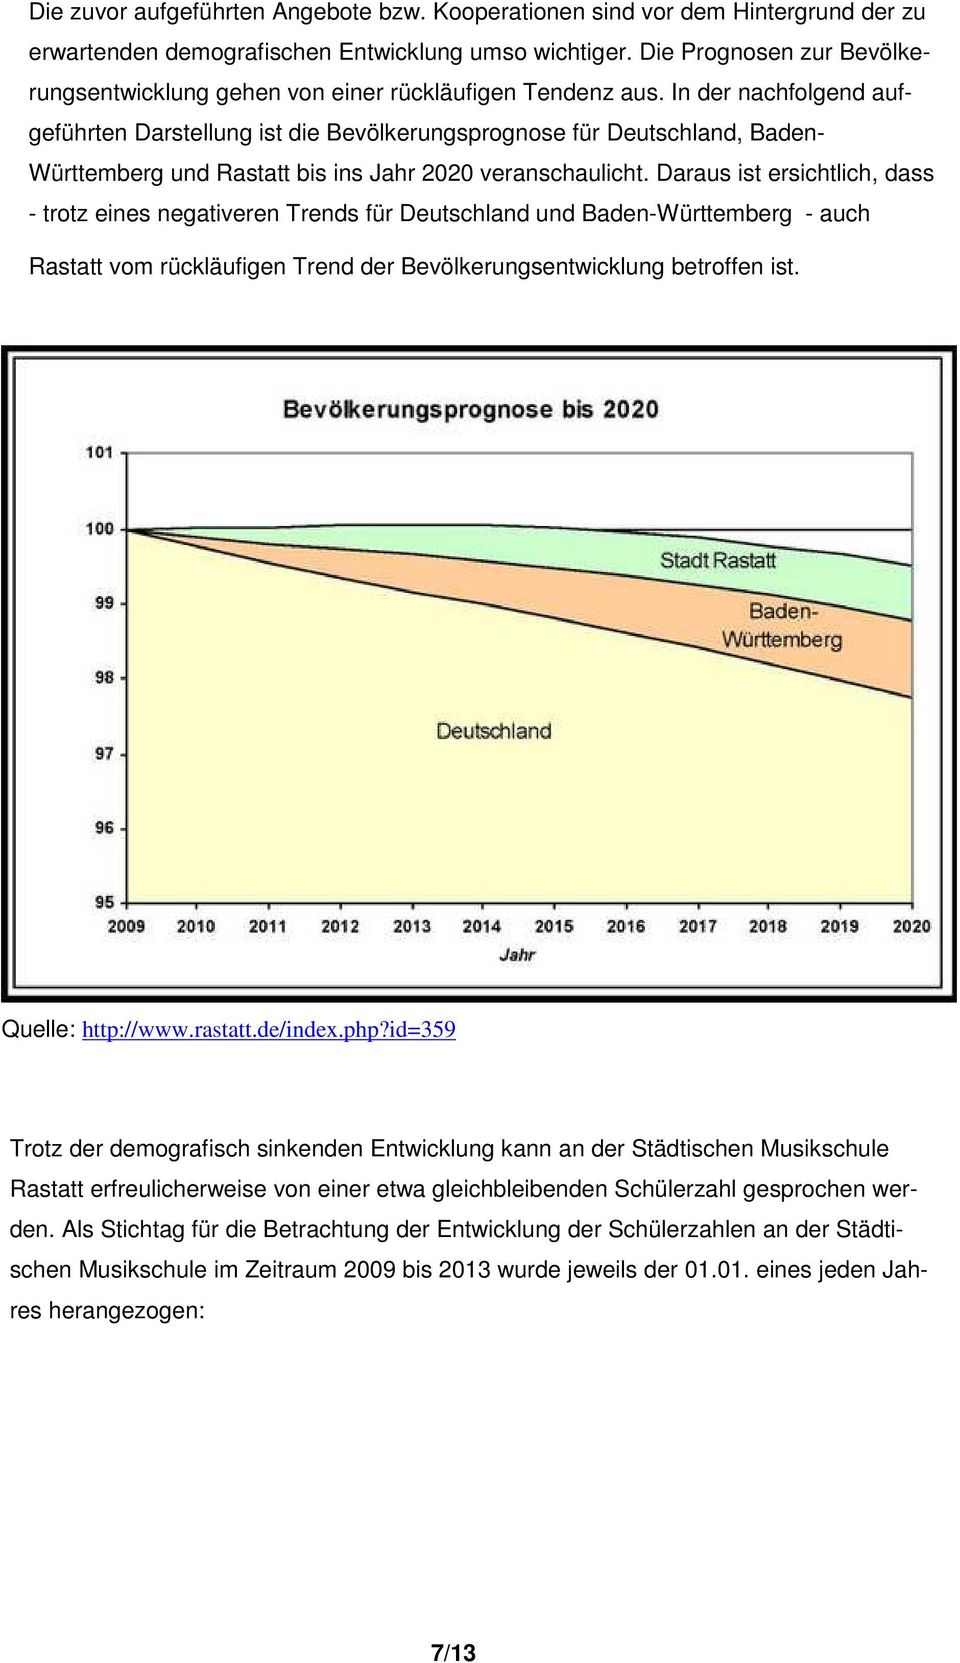 In der nachfolgend aufgeführten Darstellung ist die Bevölkerungsprognose für Deutschland, Baden- Württemberg und Rastatt bis ins Jahr 2020 veranschaulicht.